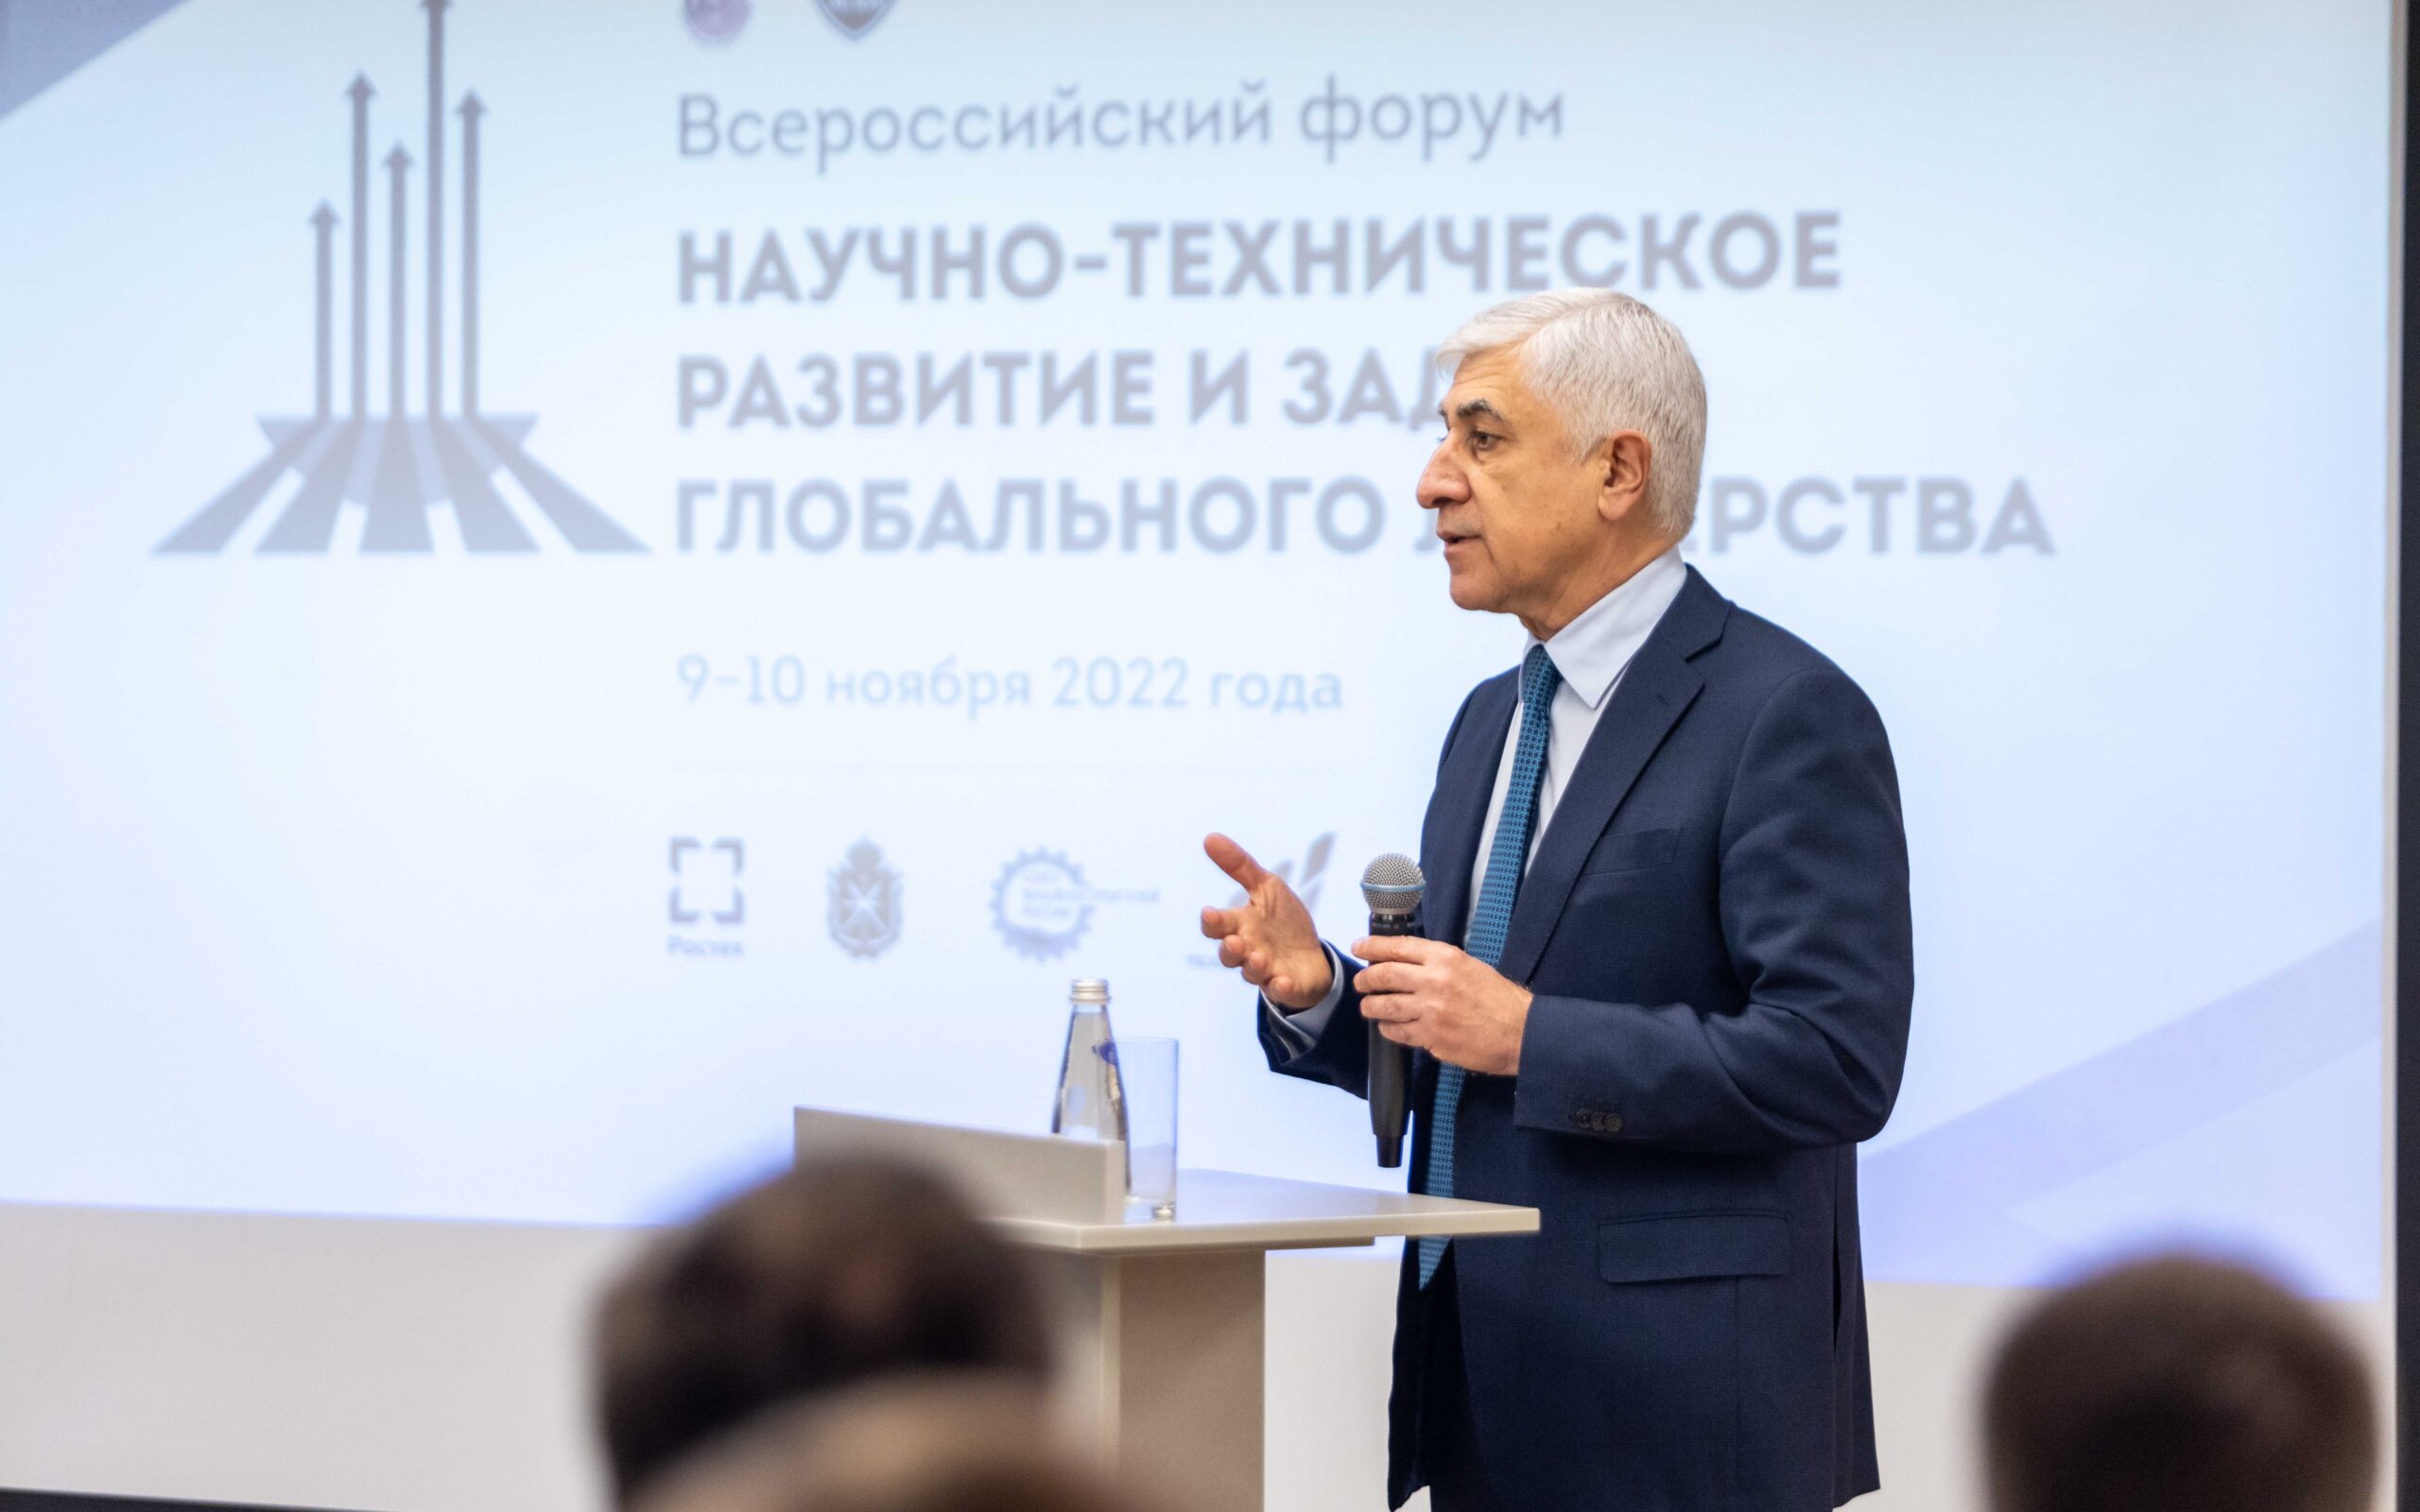 Михаил Погосян рассказал о будущем высокотехнологичных рынков на Всероссийском форуме «Научно-техническое развитие и задачи глобального лидерства» в МАИ